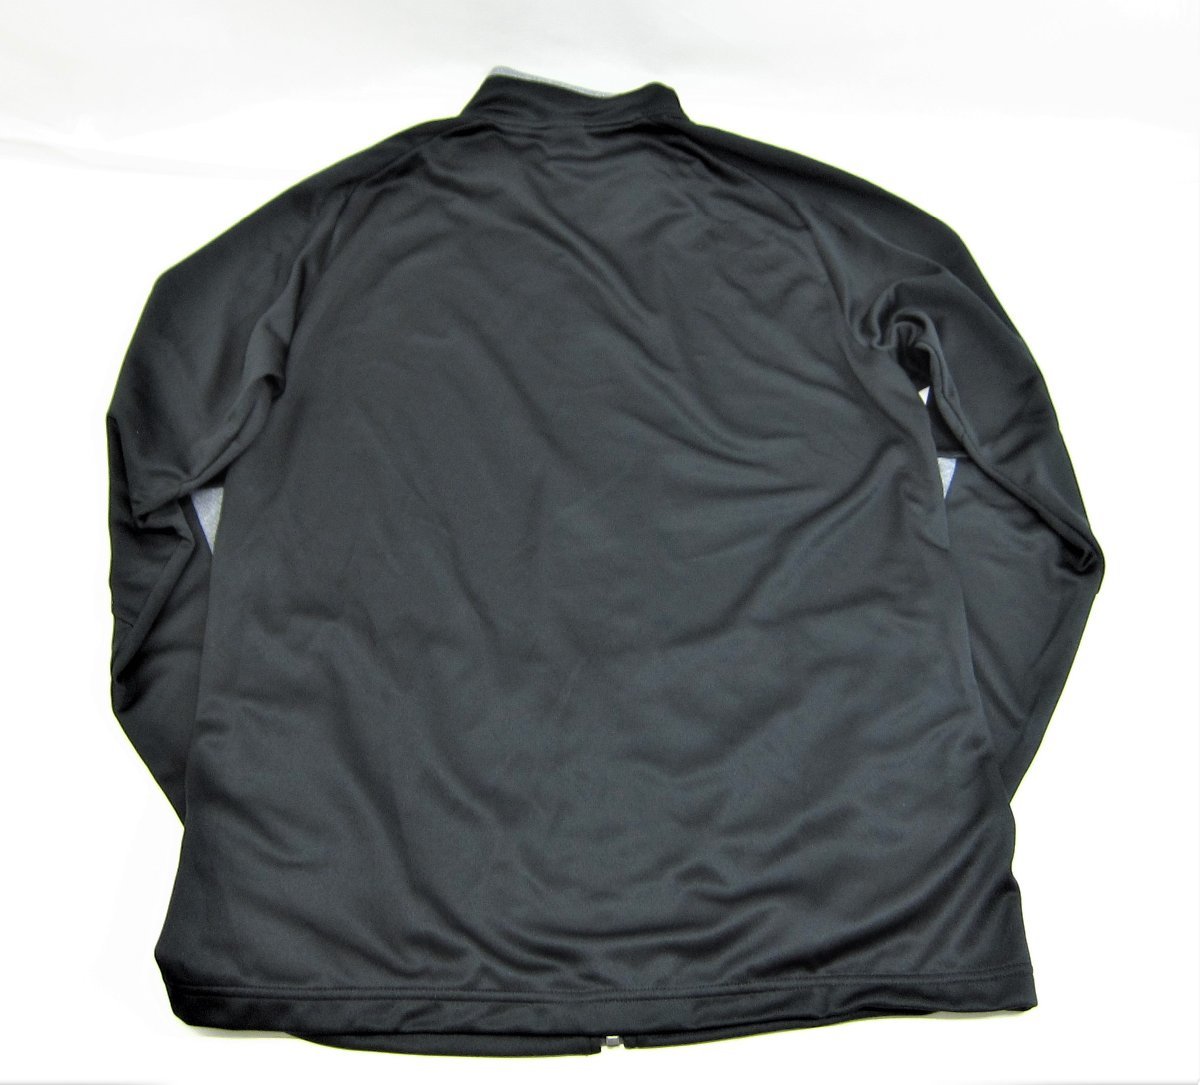 MIZUNO Mizuno soft вязаный жакет тренировка 32MC116009 SIZE:XL мужской одежда *UF3530